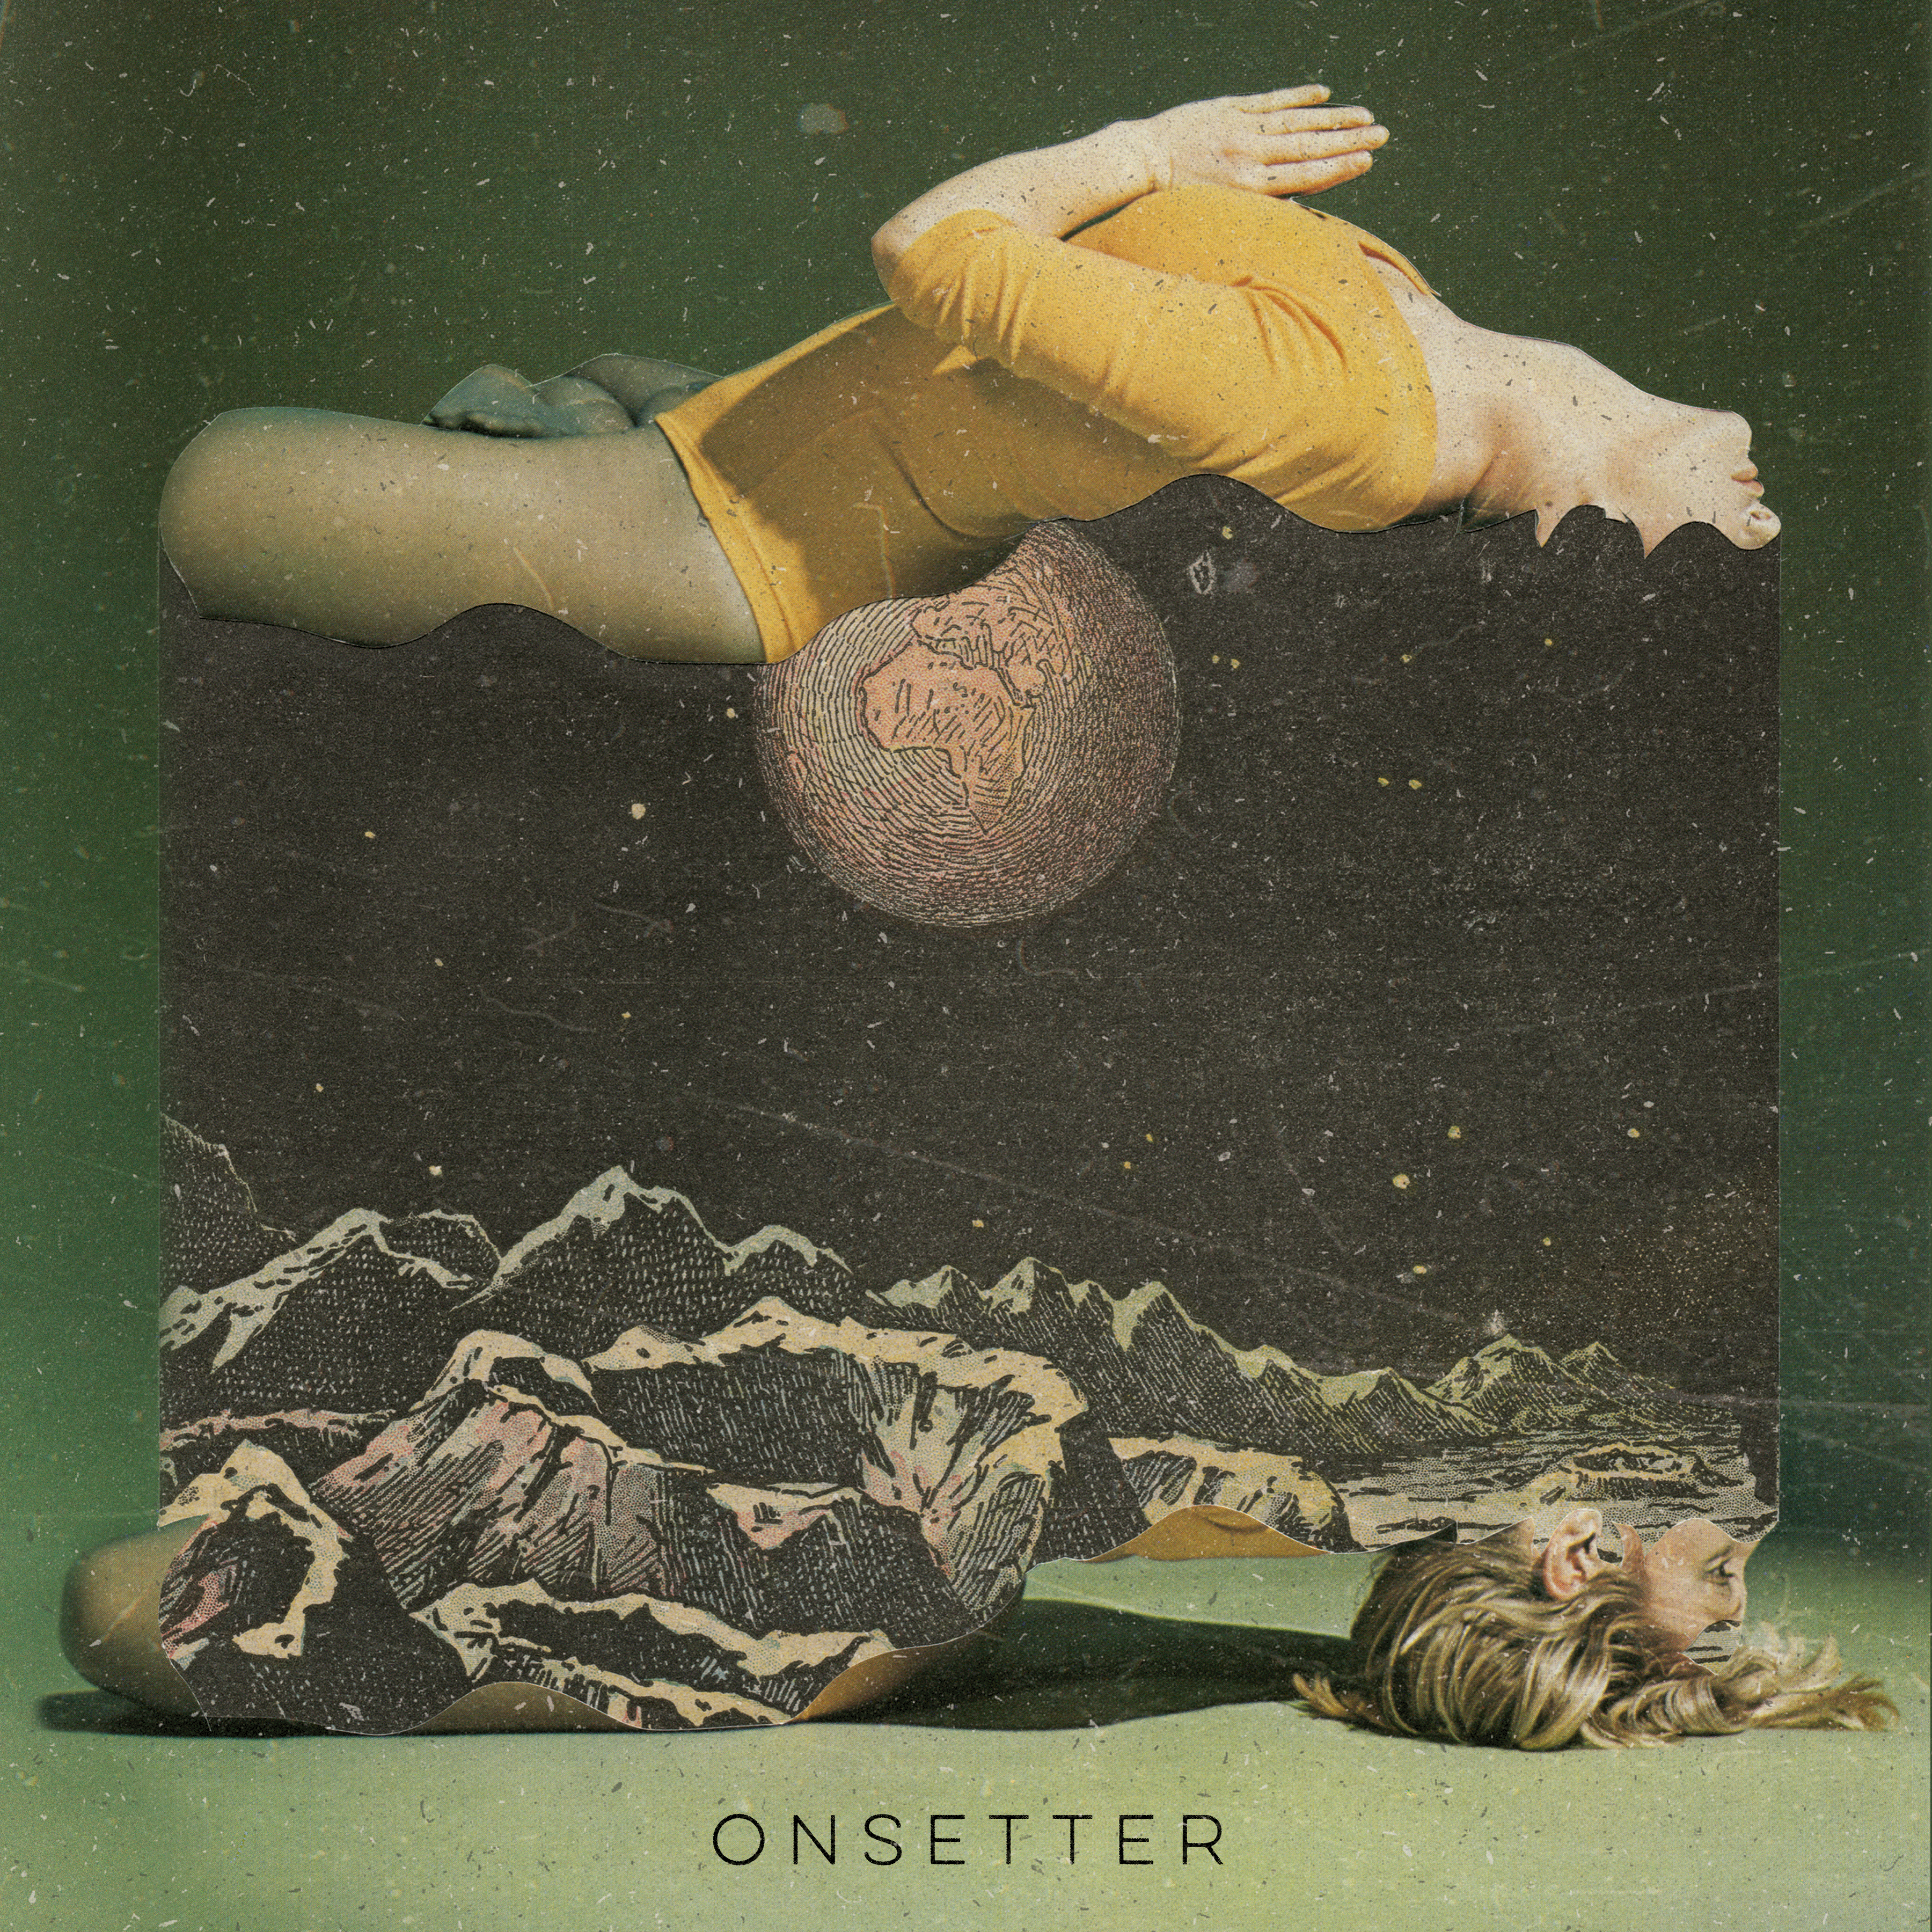 Onsetter - "S/T" Black Vinyl